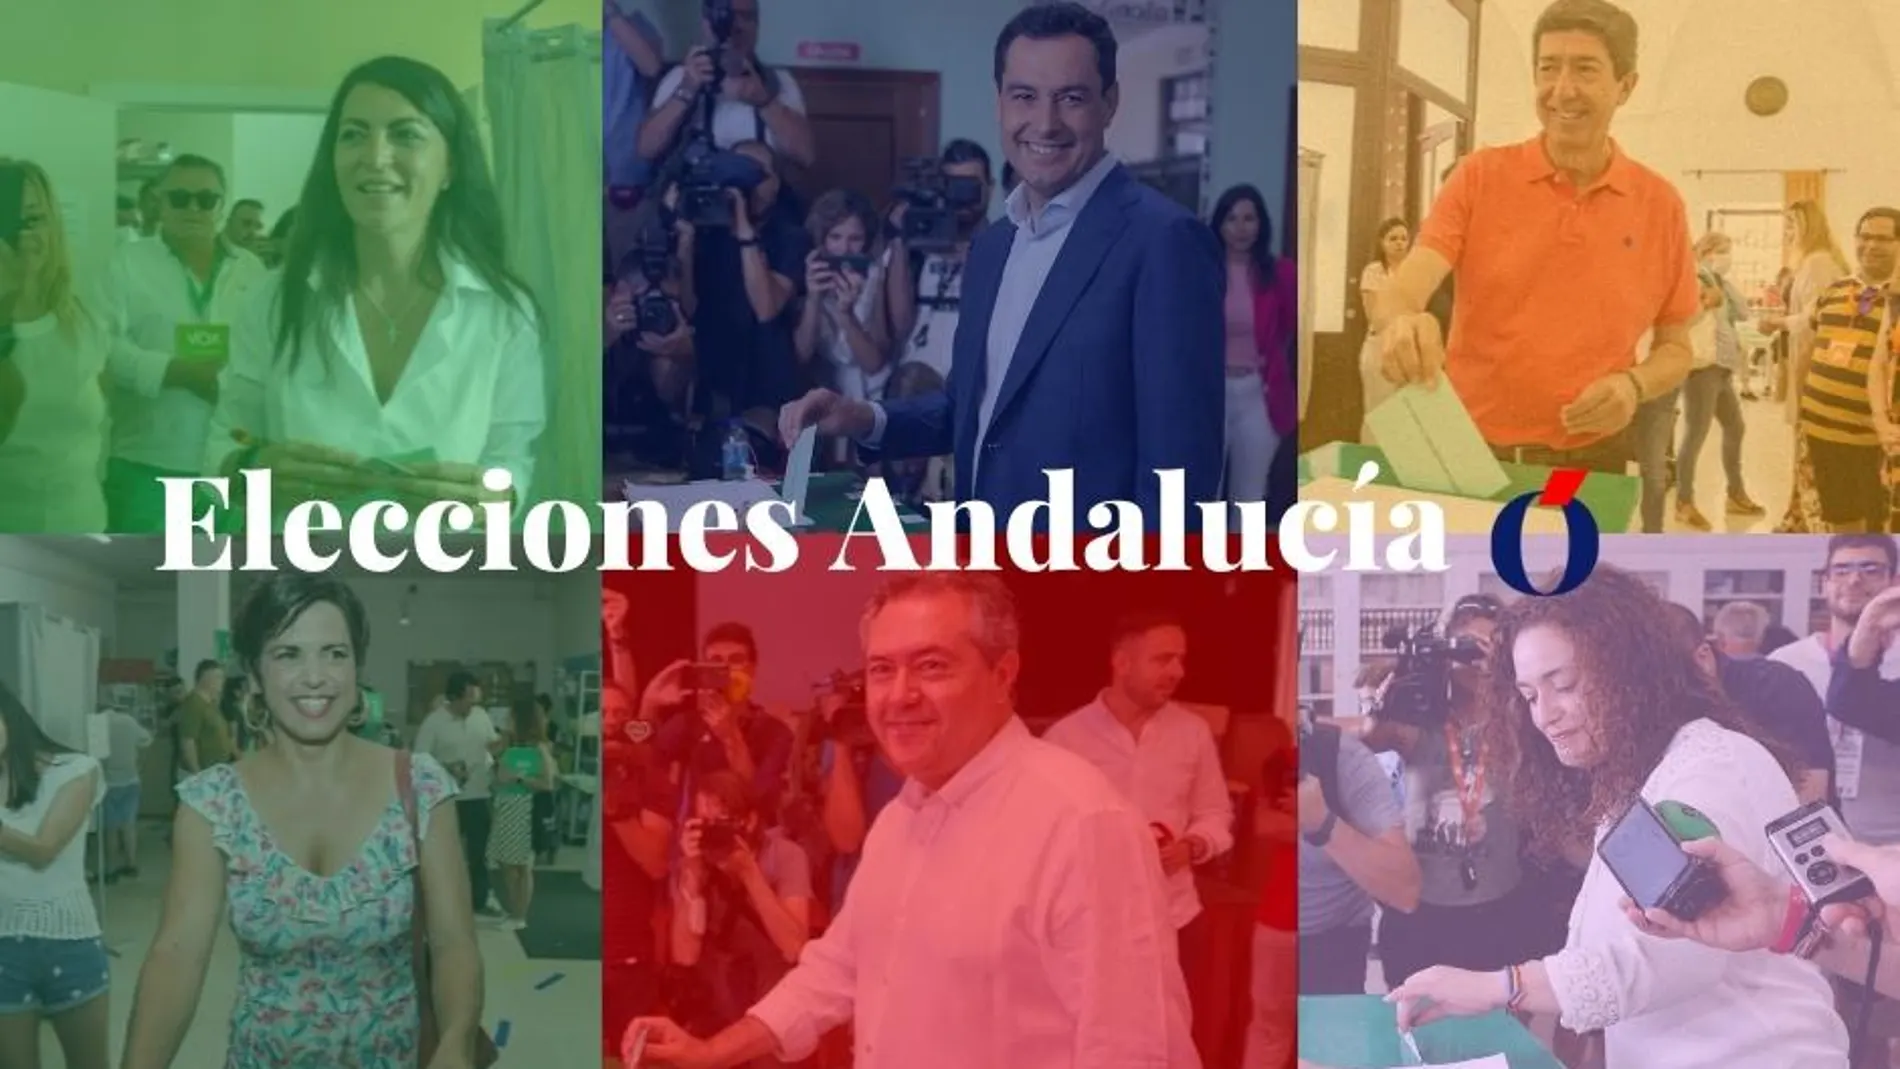 Los candidatos andaluces votan el 19-J